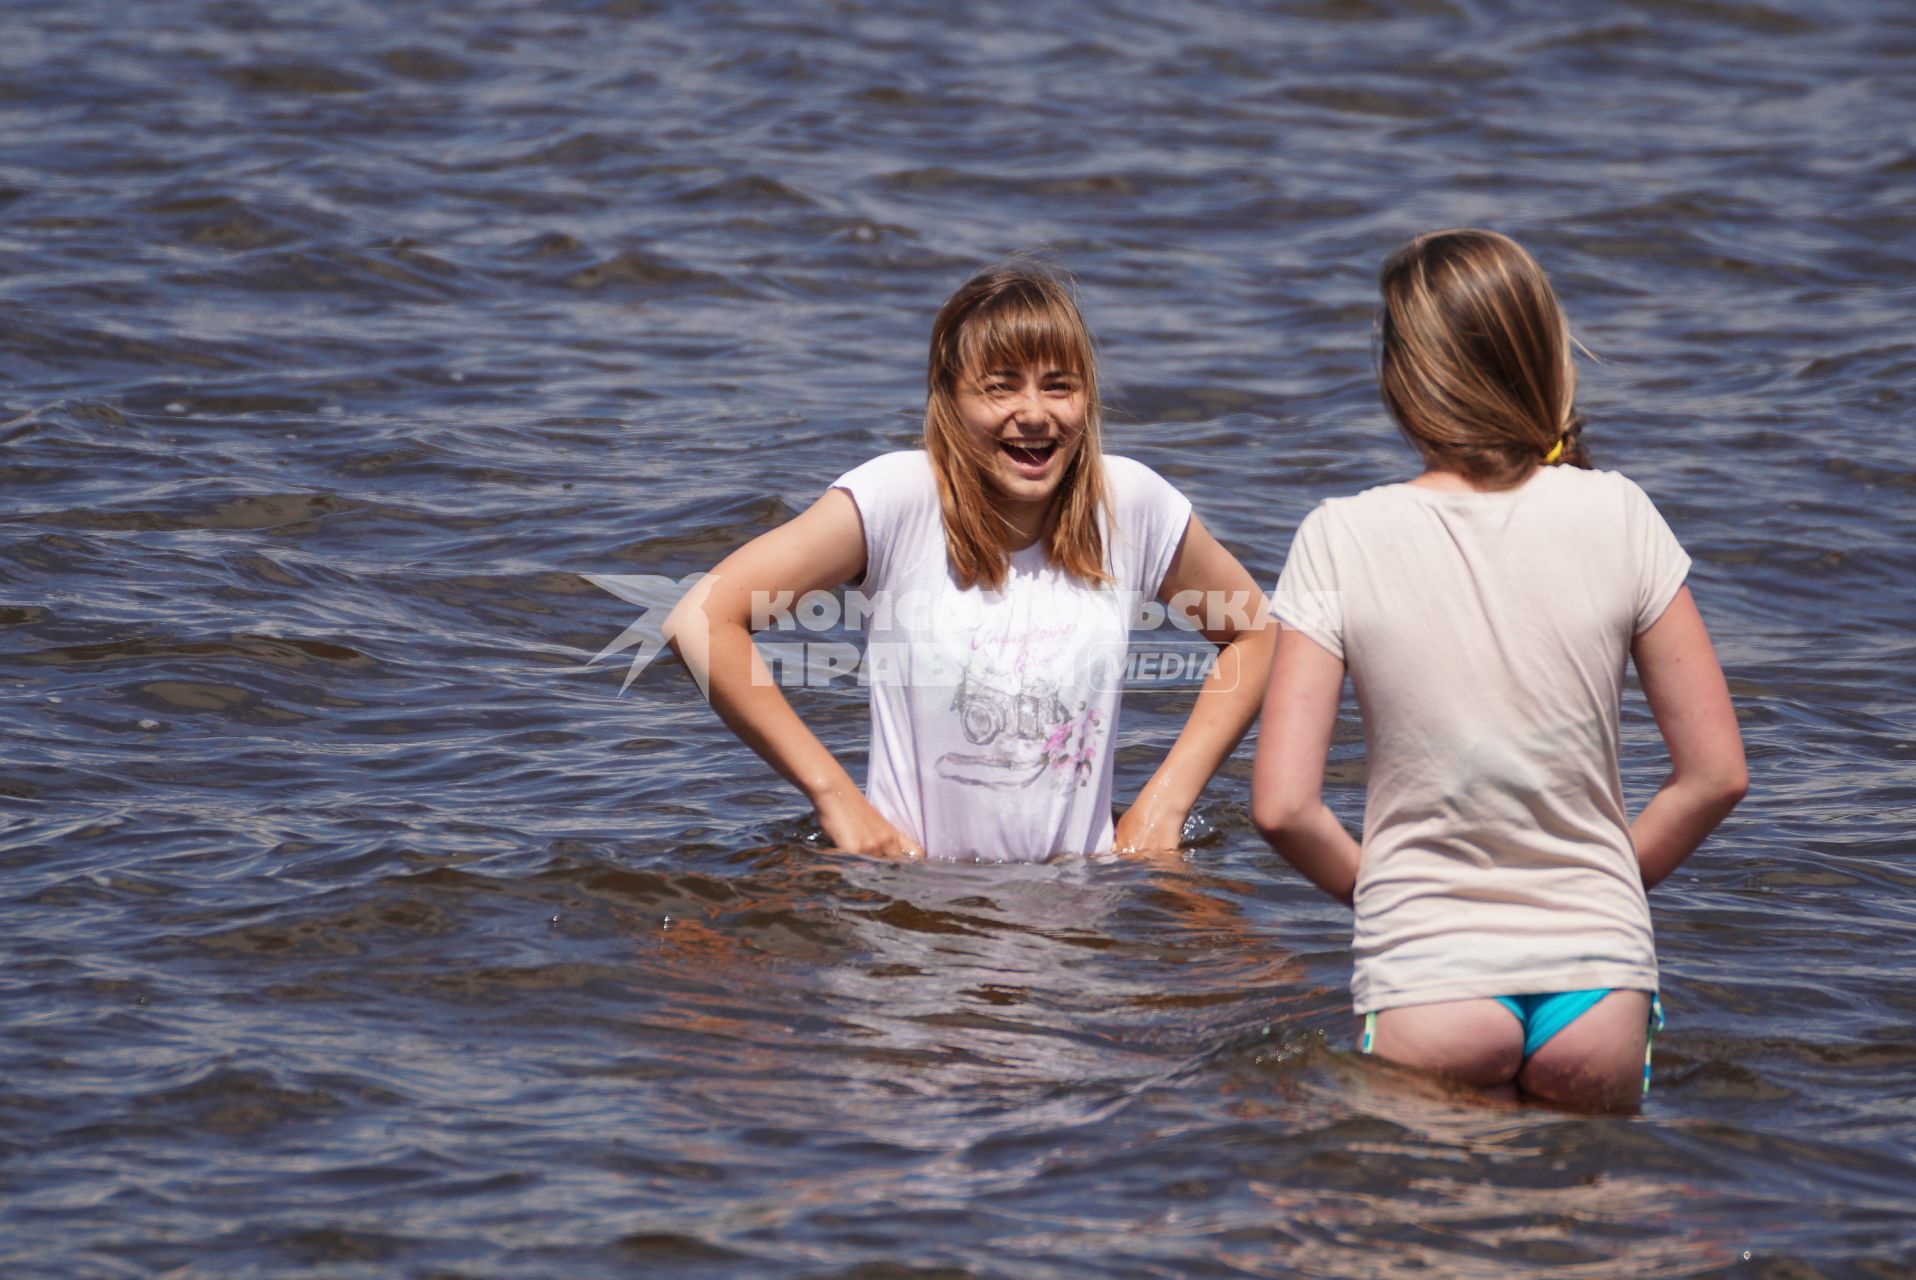 Екатеринбург. Девушки купаются в водах ВИЗовского пруда